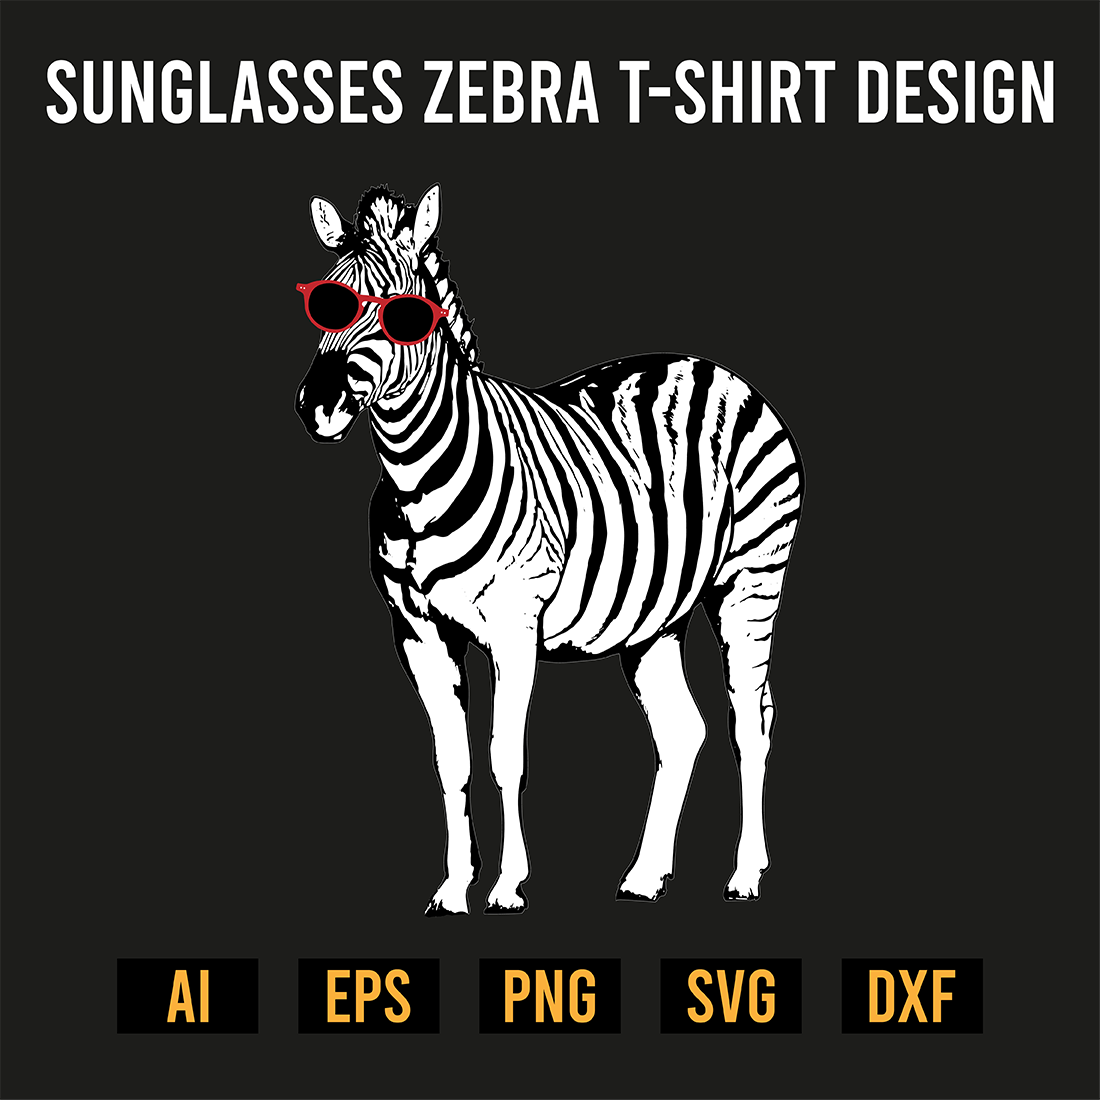 Sunglasses Zebra T-Shirt Design preview image.